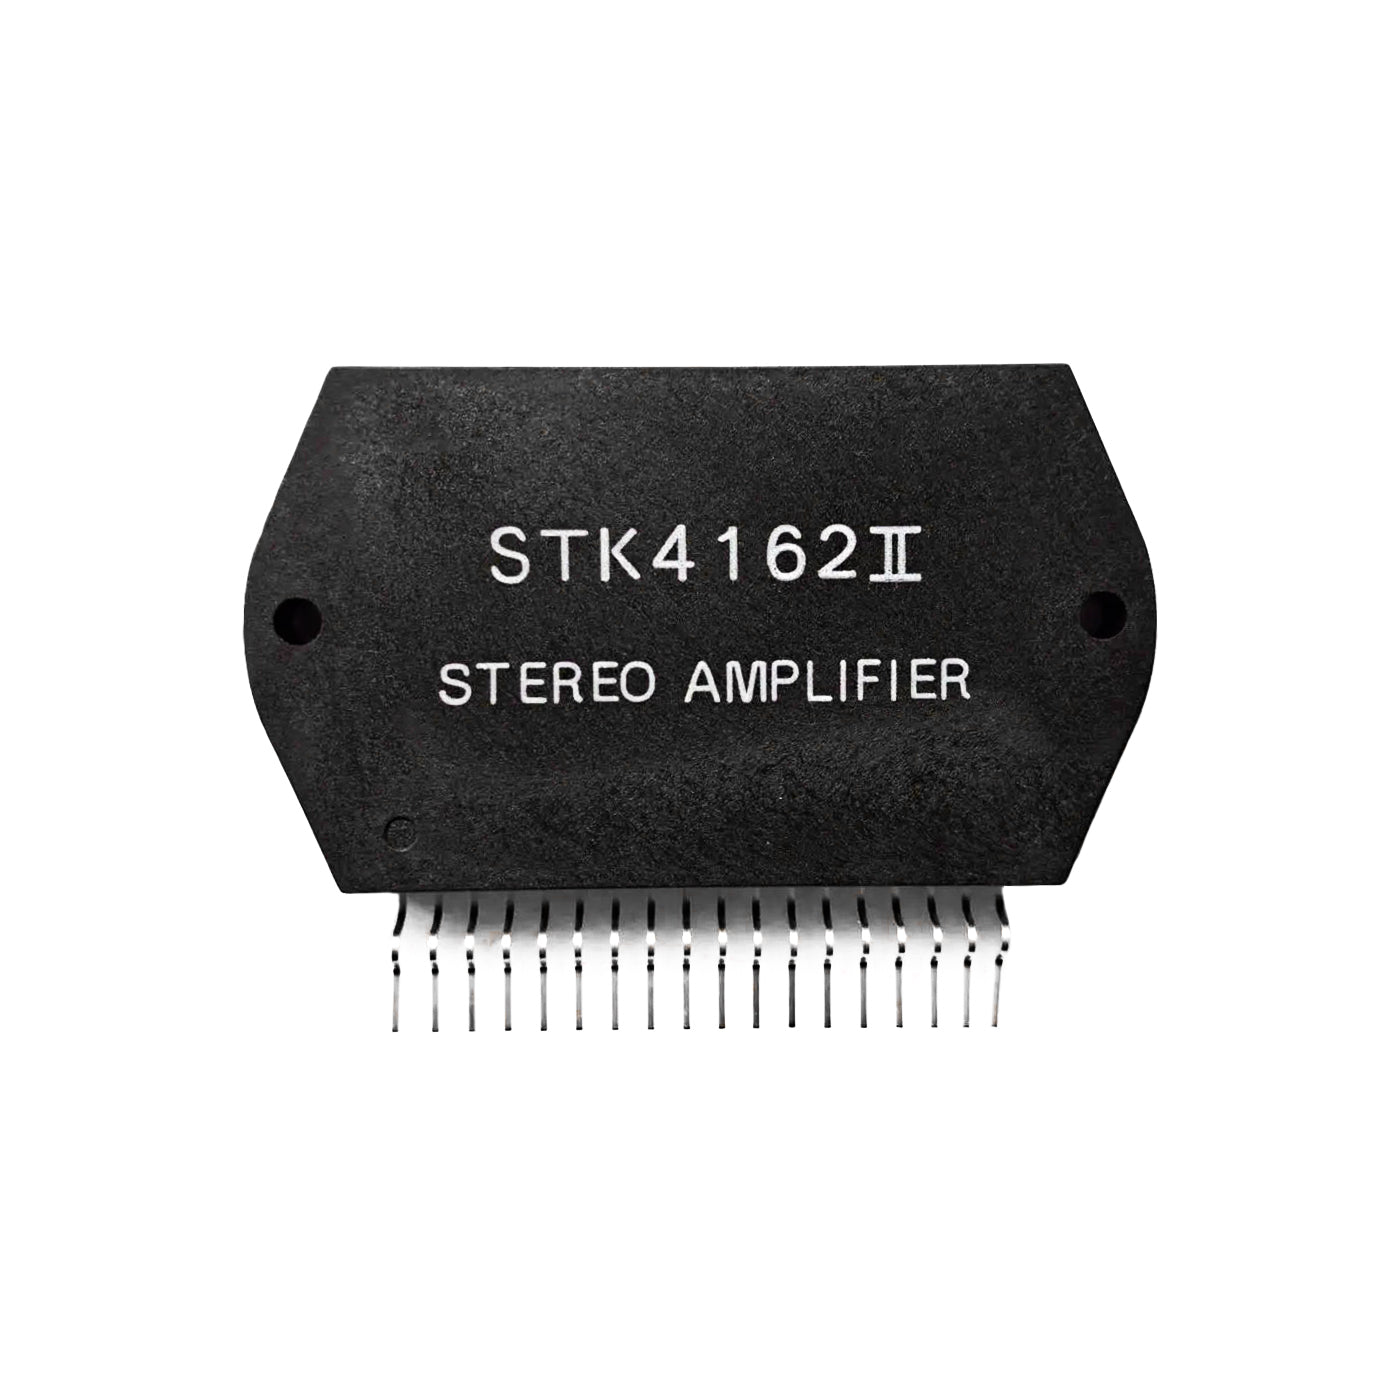 STK4162II componente elettronico, circuito integrato, transistor, stereo amplifier, 18 contatti